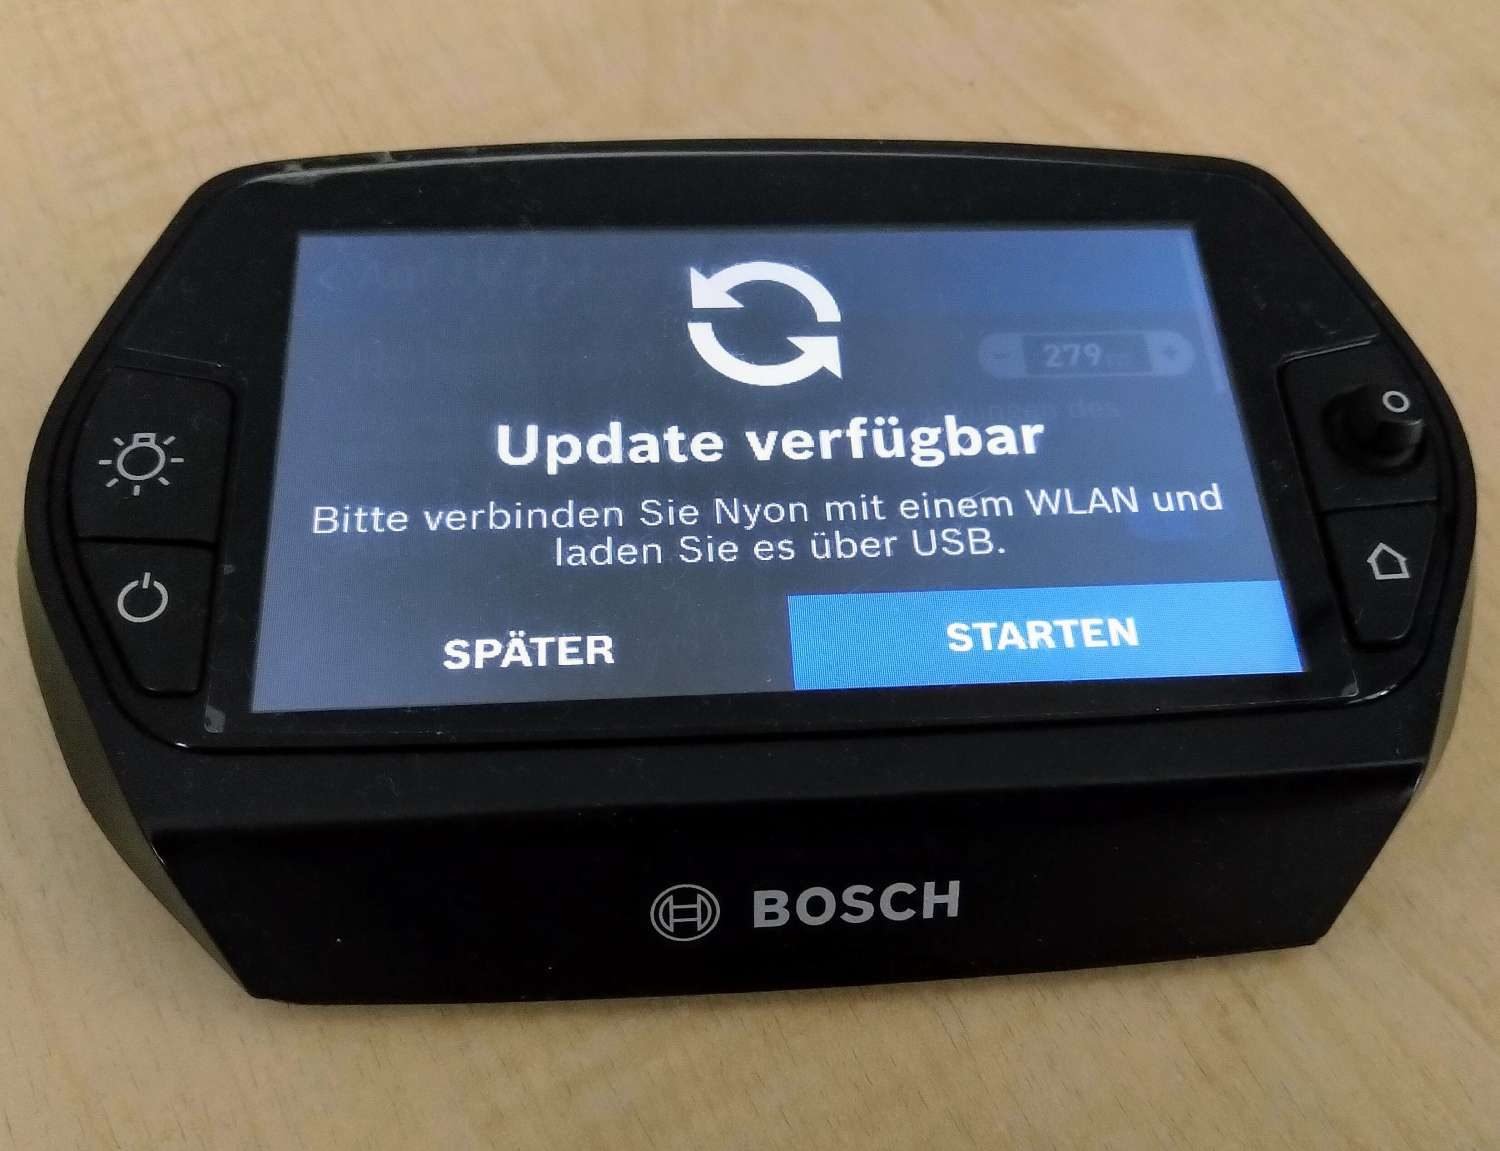 Bosch Nyon Update für 2019